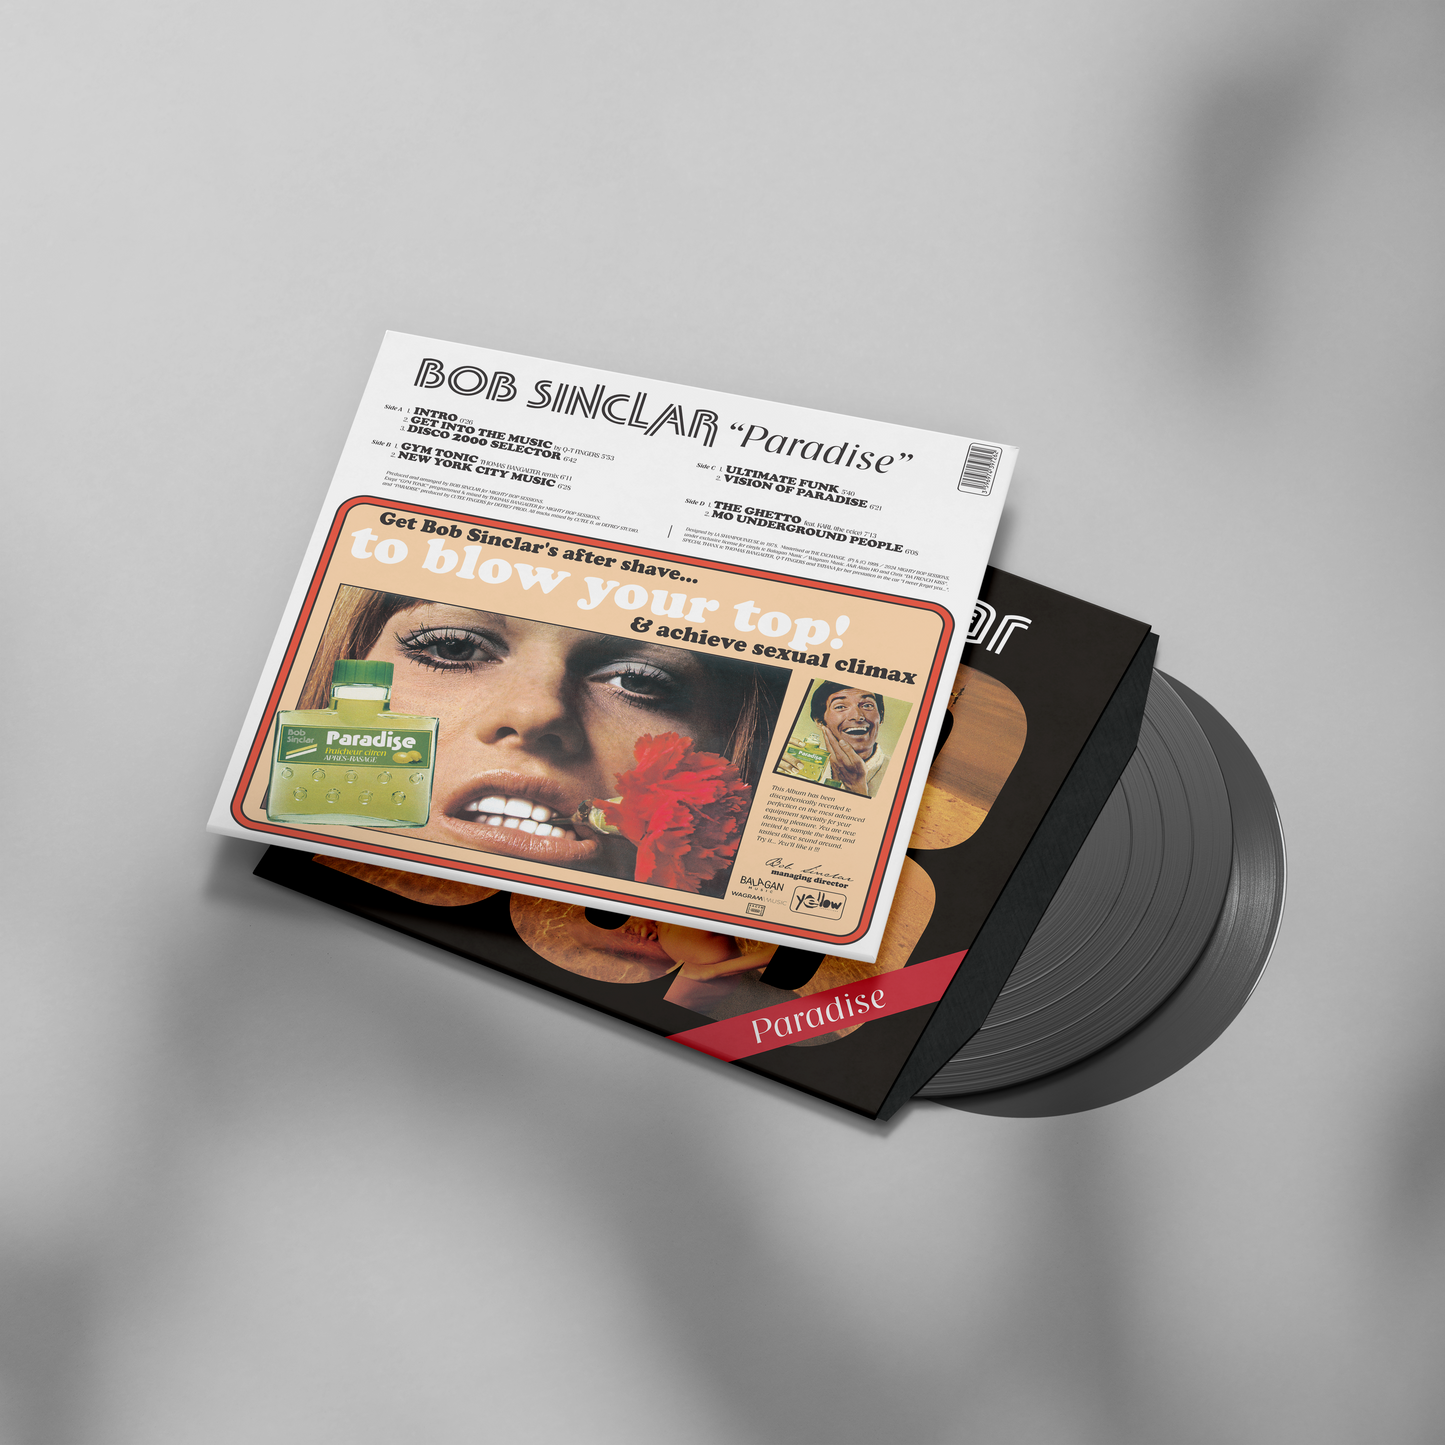 Double vinyl | Paradise | Bob Sinclar